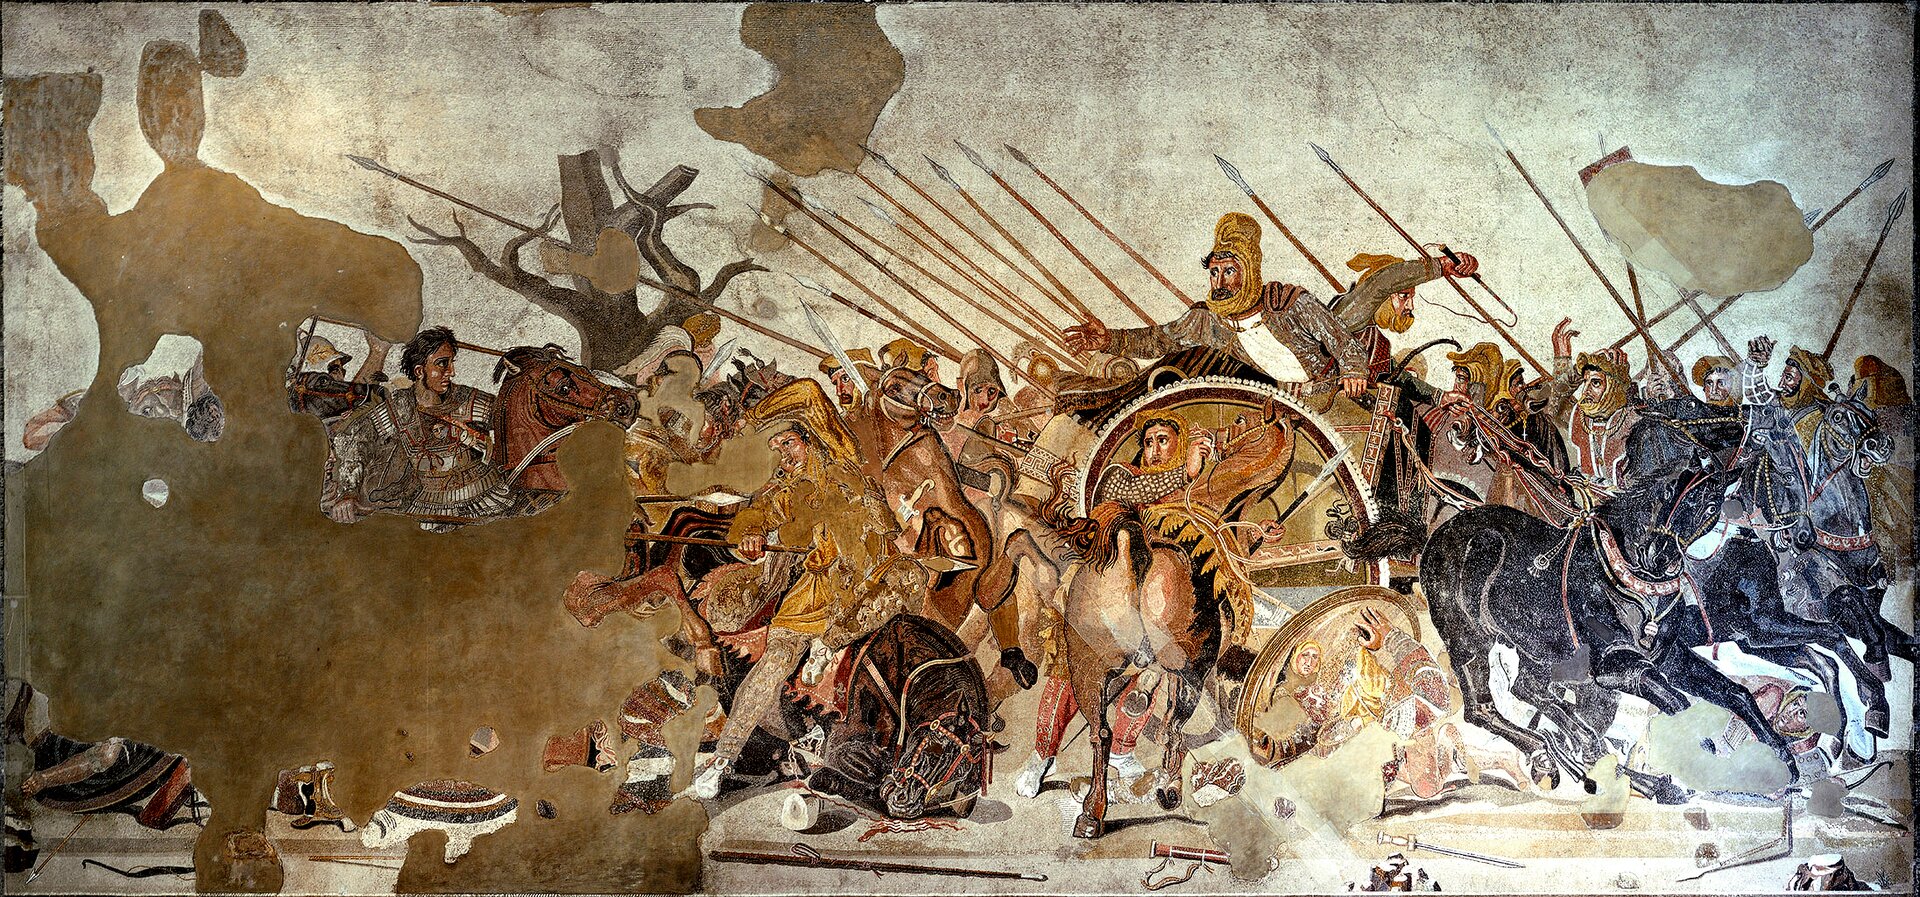 Ilustracja przedstawia mozaikę pochodzącą z tzw. Domu Fauna w Pompejach. Ukazana jest na niej bitwa Macedończyków z Persami pod Issos w 333 r. p.n. e. Przedstawieni są żołnierze walczący konno na polu bitwy. Z lewej strony obrazu ukazany jest z profilu Aleksander Wielki na koniu. Ubrany jest w srebrną zbroję; ma czarne krótkie włosy i duże oczy. Naciera na króla Persów – Dariusza, który siedzi na kwadrydze obok woźnicy. Mimo, że jest atakowany ze wszystkich stron, wychyla się z powozu wyciągając przed siebie rękę. Ma na głowie żółtą chustę; ubrany jest w ciemną szatę i jasną koszulę. Po lewej stronie ilustracji znajduje się nagie drzewo symbolizujące zimę – porę roku, podczas której rozegrano bitwę.